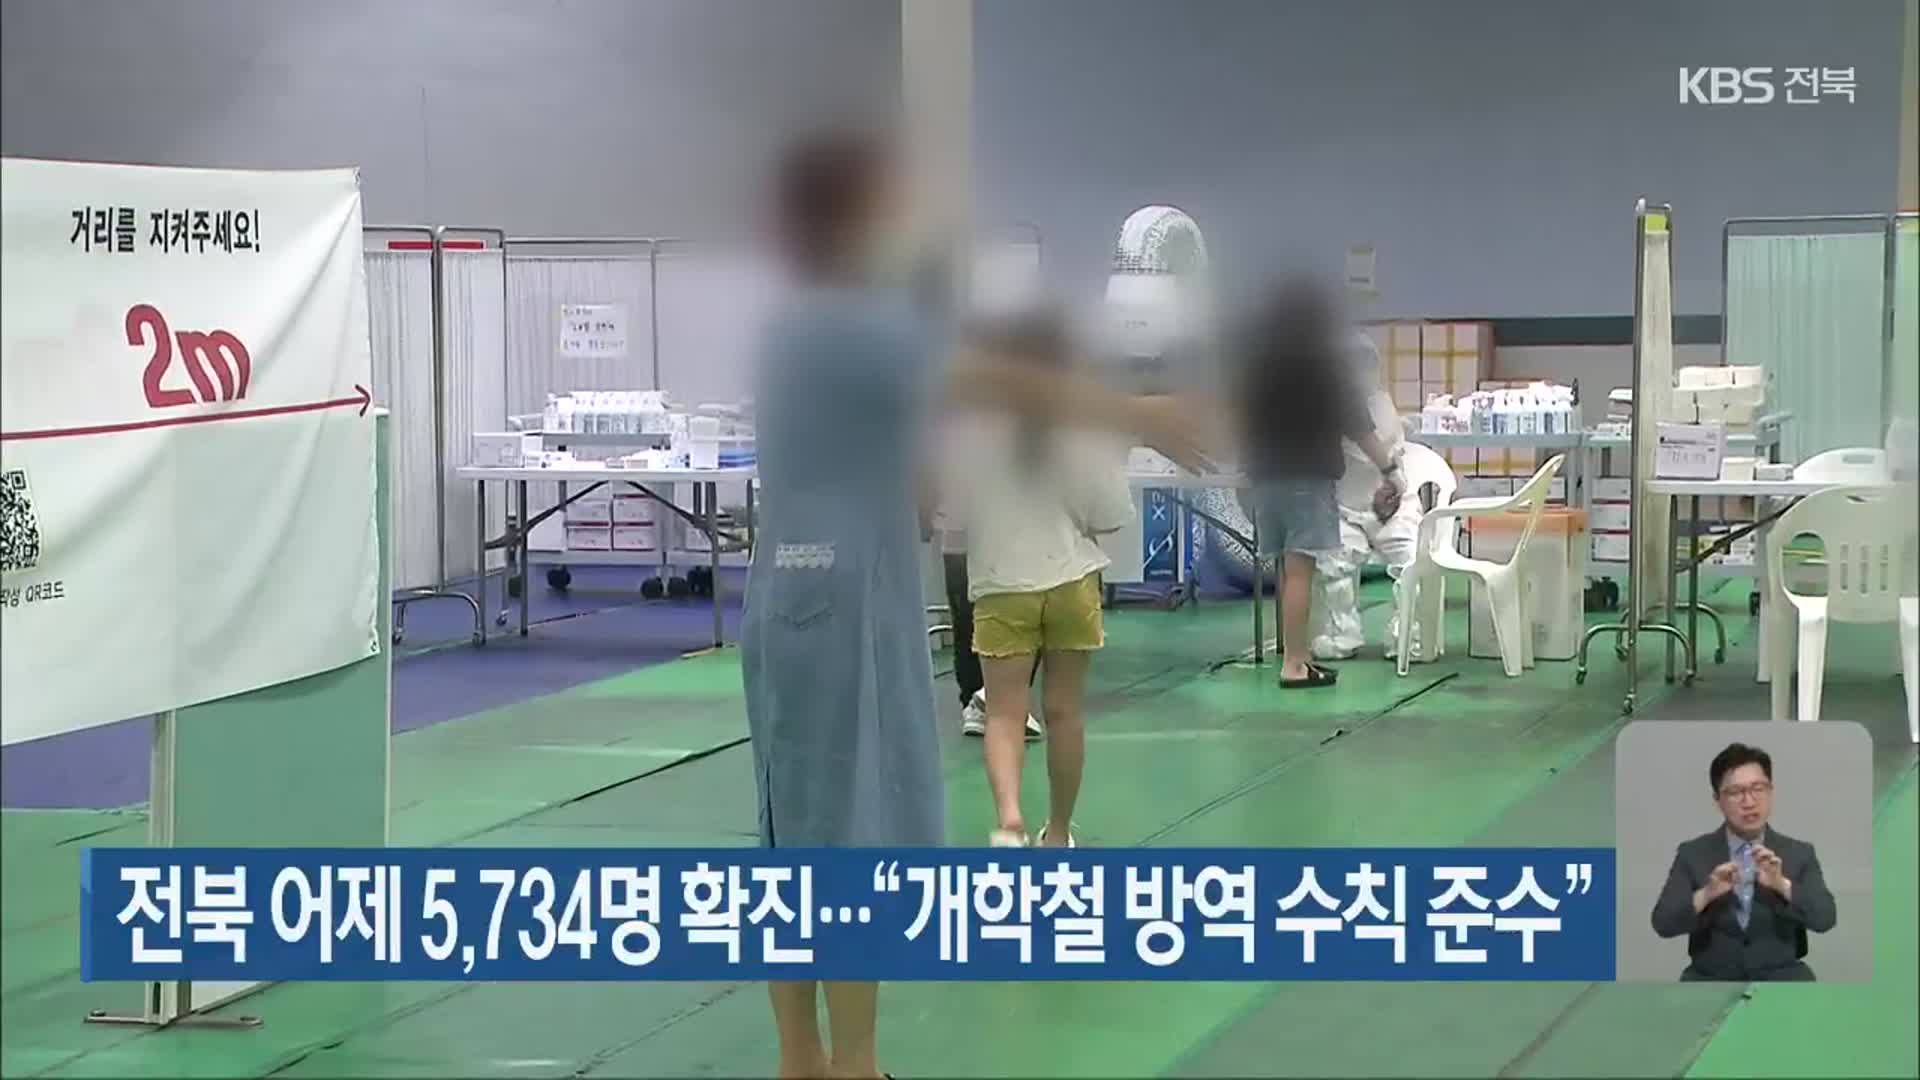 전북 어제 5,734명 확진…“개학철 방역 수칙 준수”